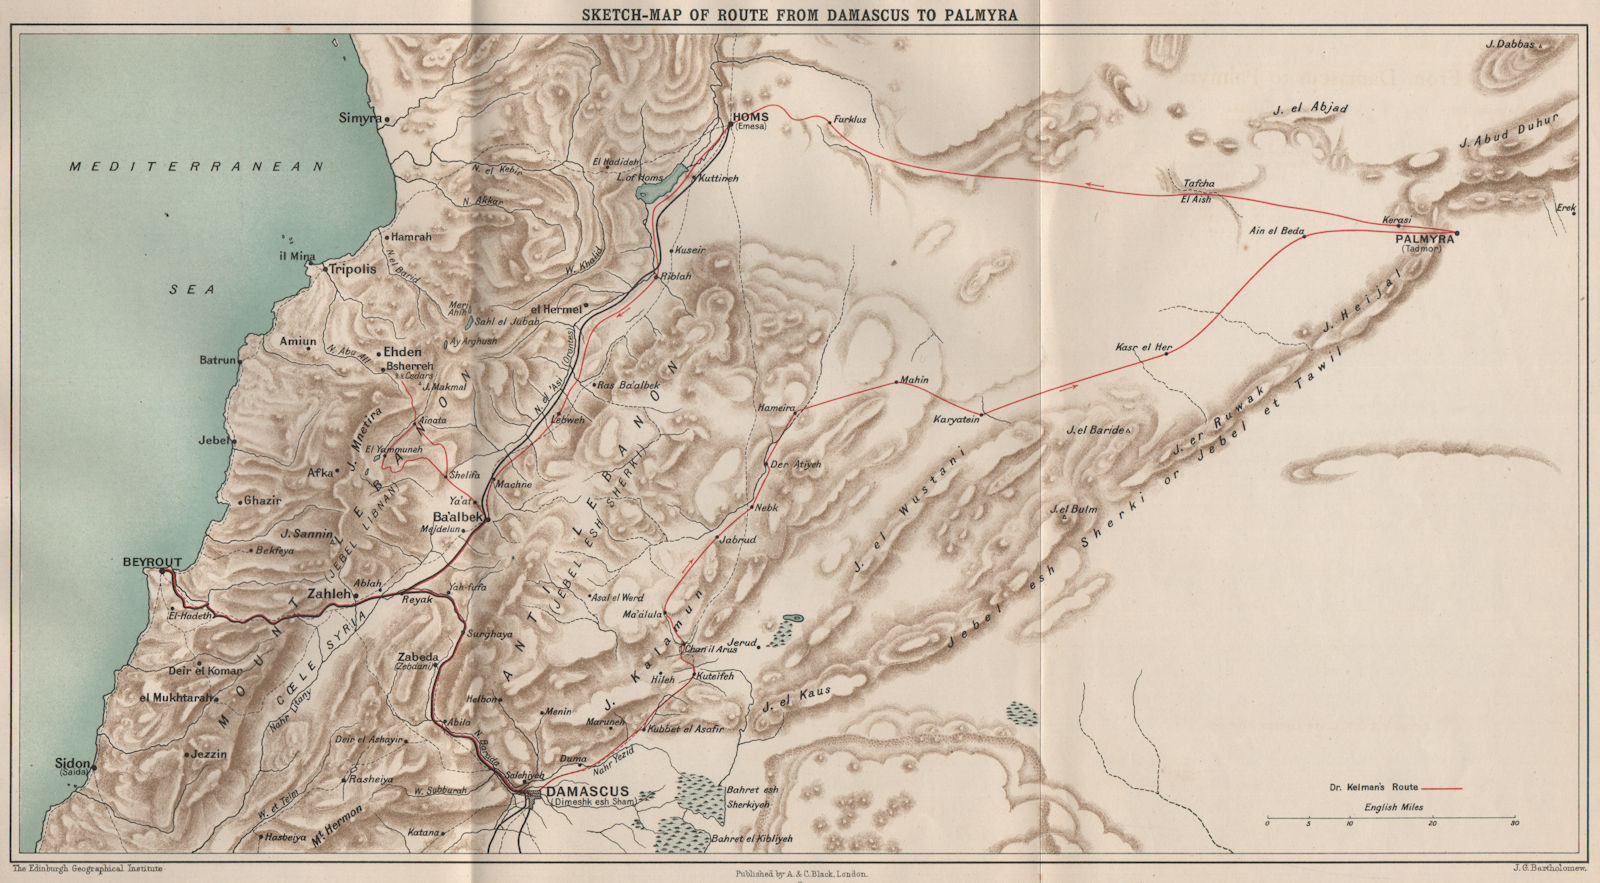 John Kelman's route from Damascus to Palmyra & Beirut. Lebanon/Syria 1908 map